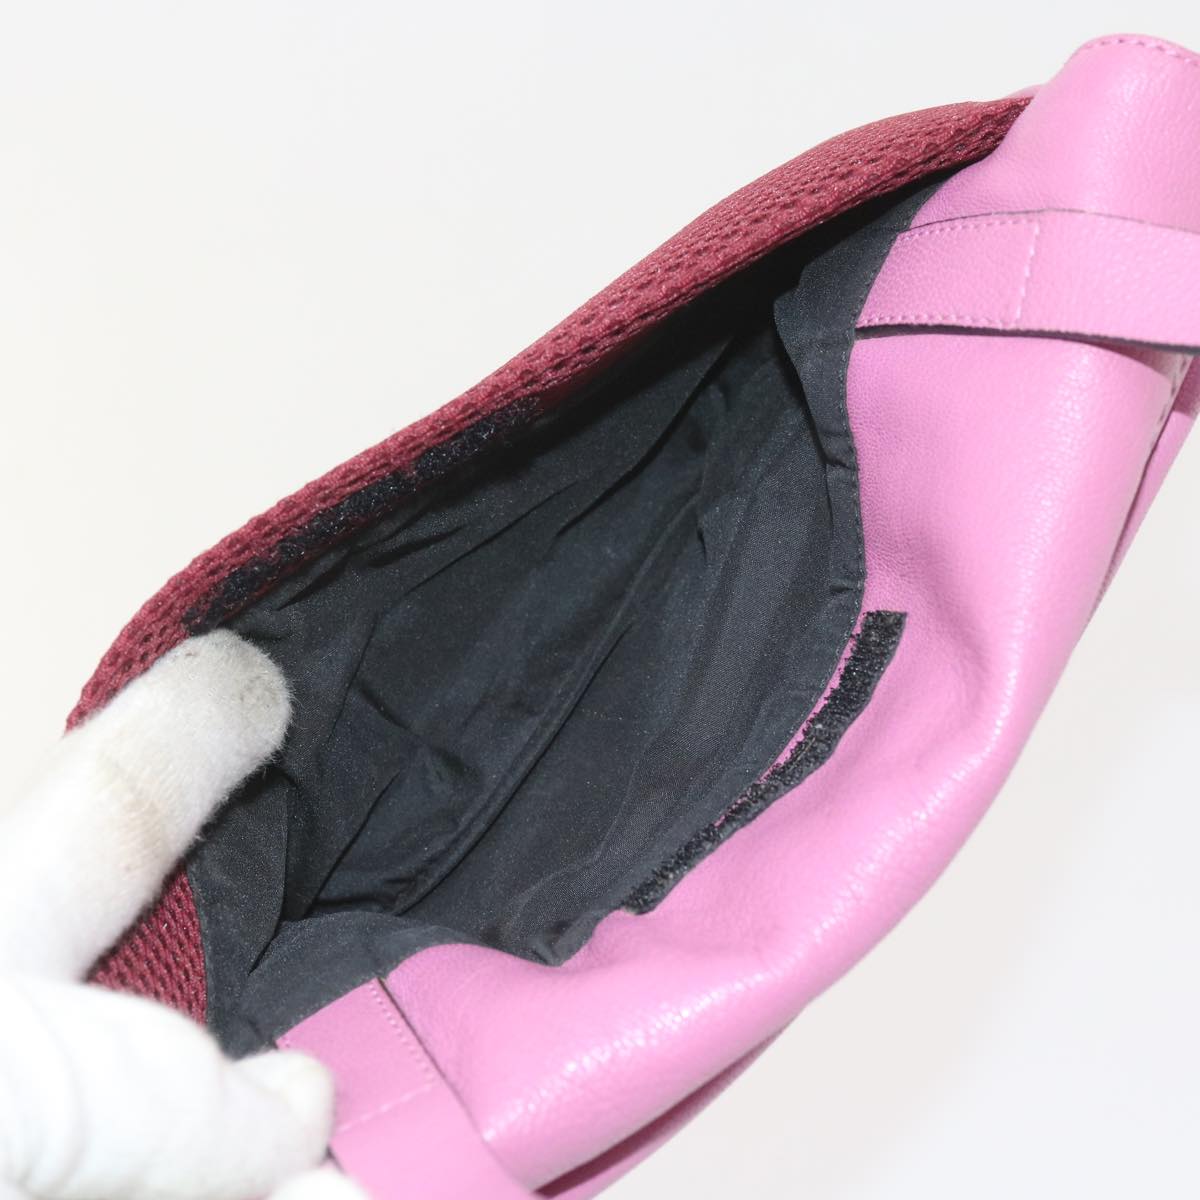 Miu Miu Shoulder Bag Leather Pink Auth bs10063